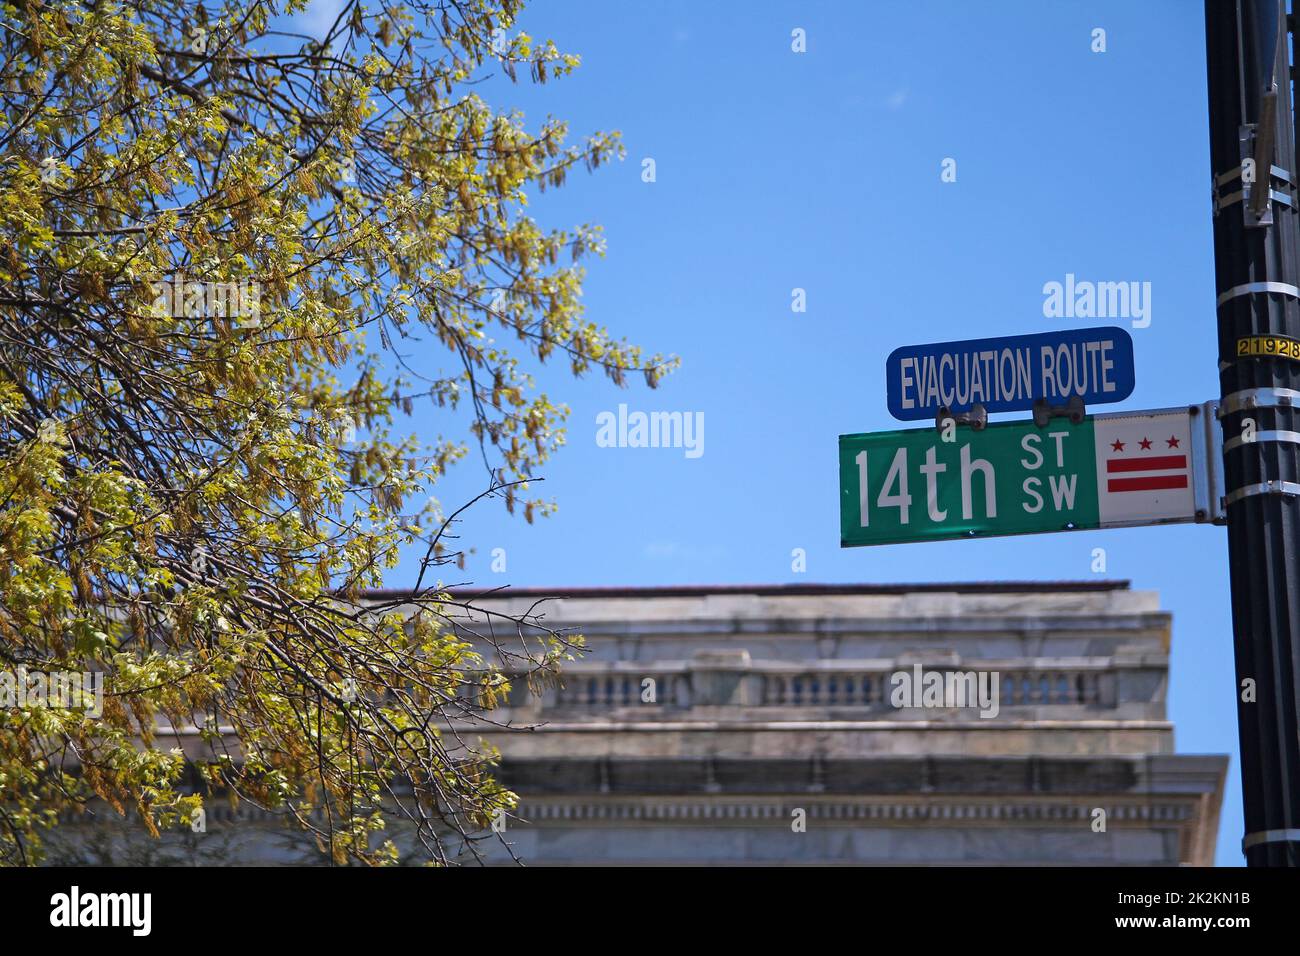 Green 14th Street South West panneau historique dans le centre-ville de Washington D.C. avec le panneau bleu Evacuation route Banque D'Images